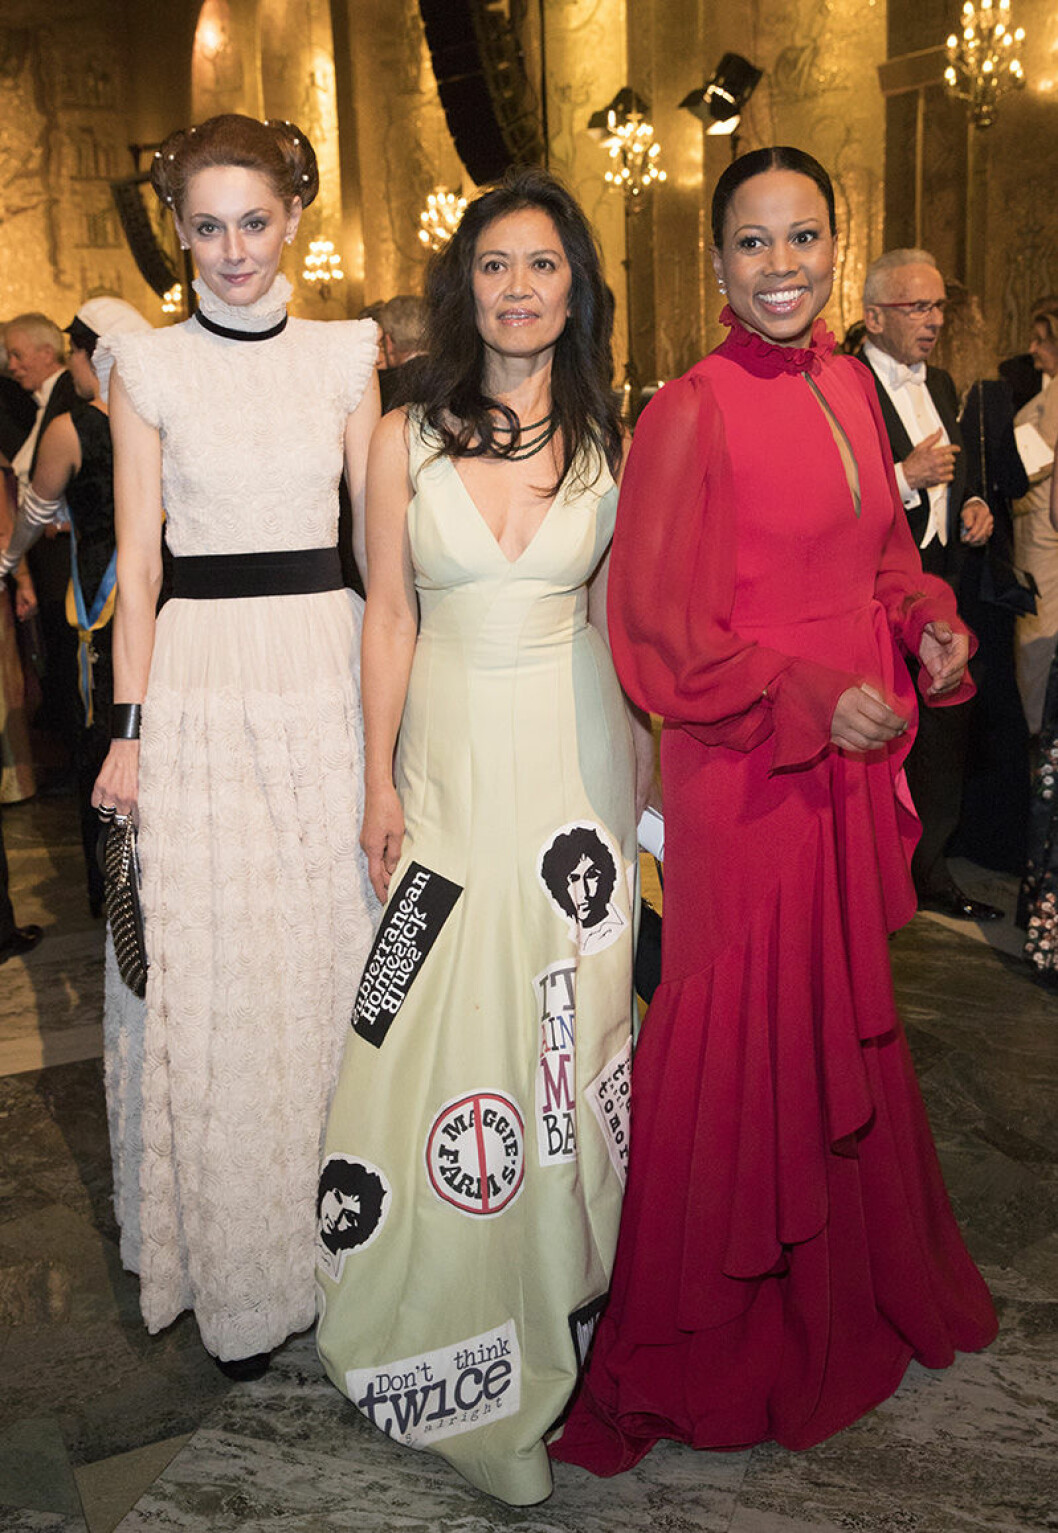 L. Mususa Wiesel, Alice Bah Kunhke Nobel banquet, Stockholm City Hall, Stockholm 2016-12-10 (c) Charles Hammarsten / IBL Nobelbanketten, Stockholms Stadshus 2016-12-10